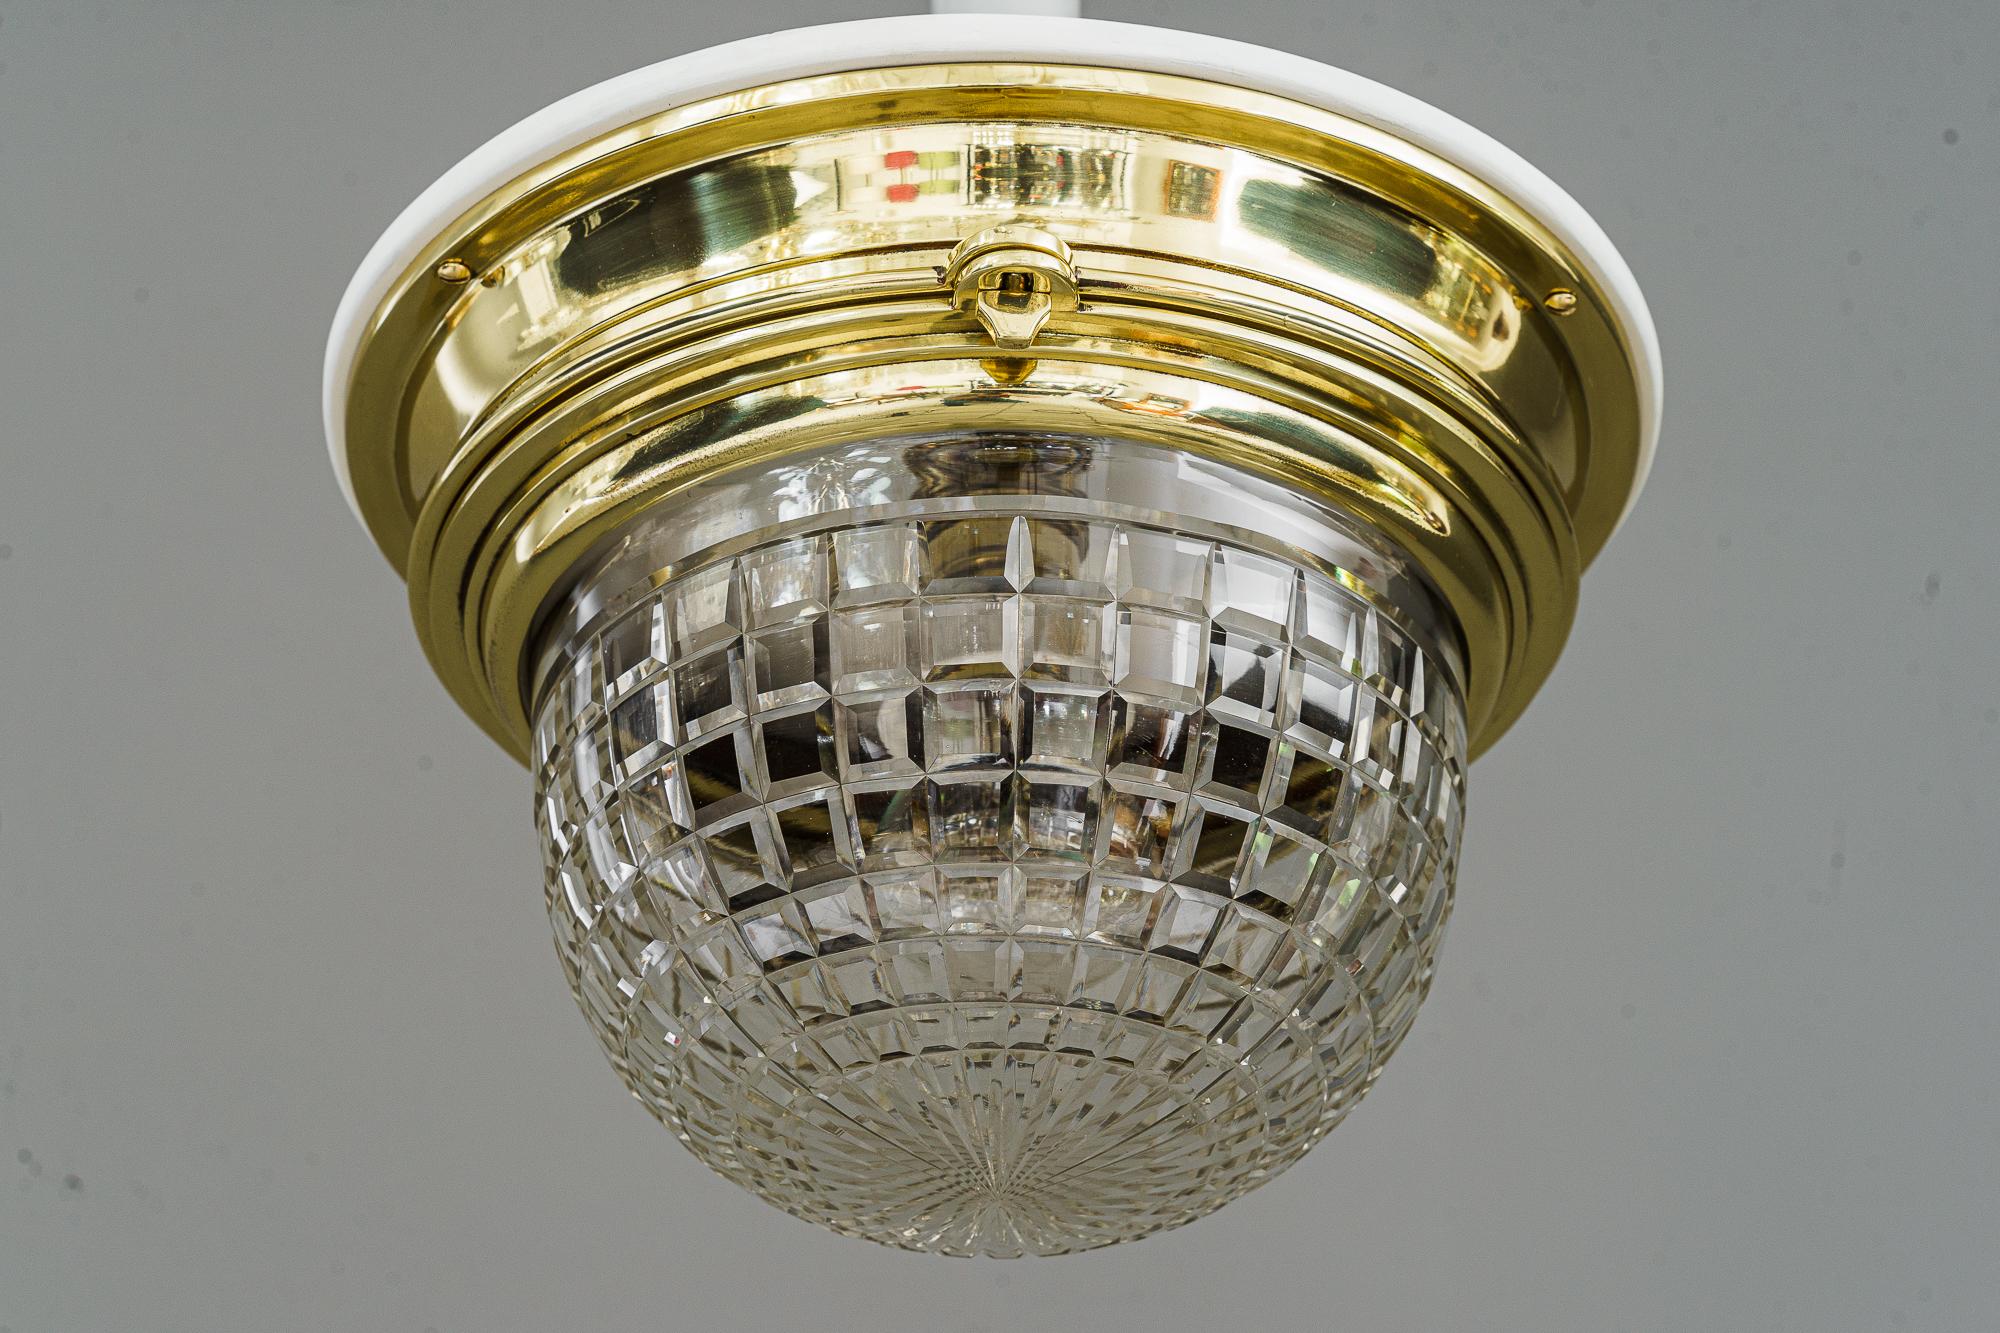 Deckenleuchte im Art déco-Stil mit geschliffenem Glasschirm Vienna aus den 1920er Jahren 
Der Glasschirm kann zum Auswechseln der Glühbirne geöffnet werden
Polierte und einbrennlackierte Messingteile
Weiße Holzplatte auf der Oberseite